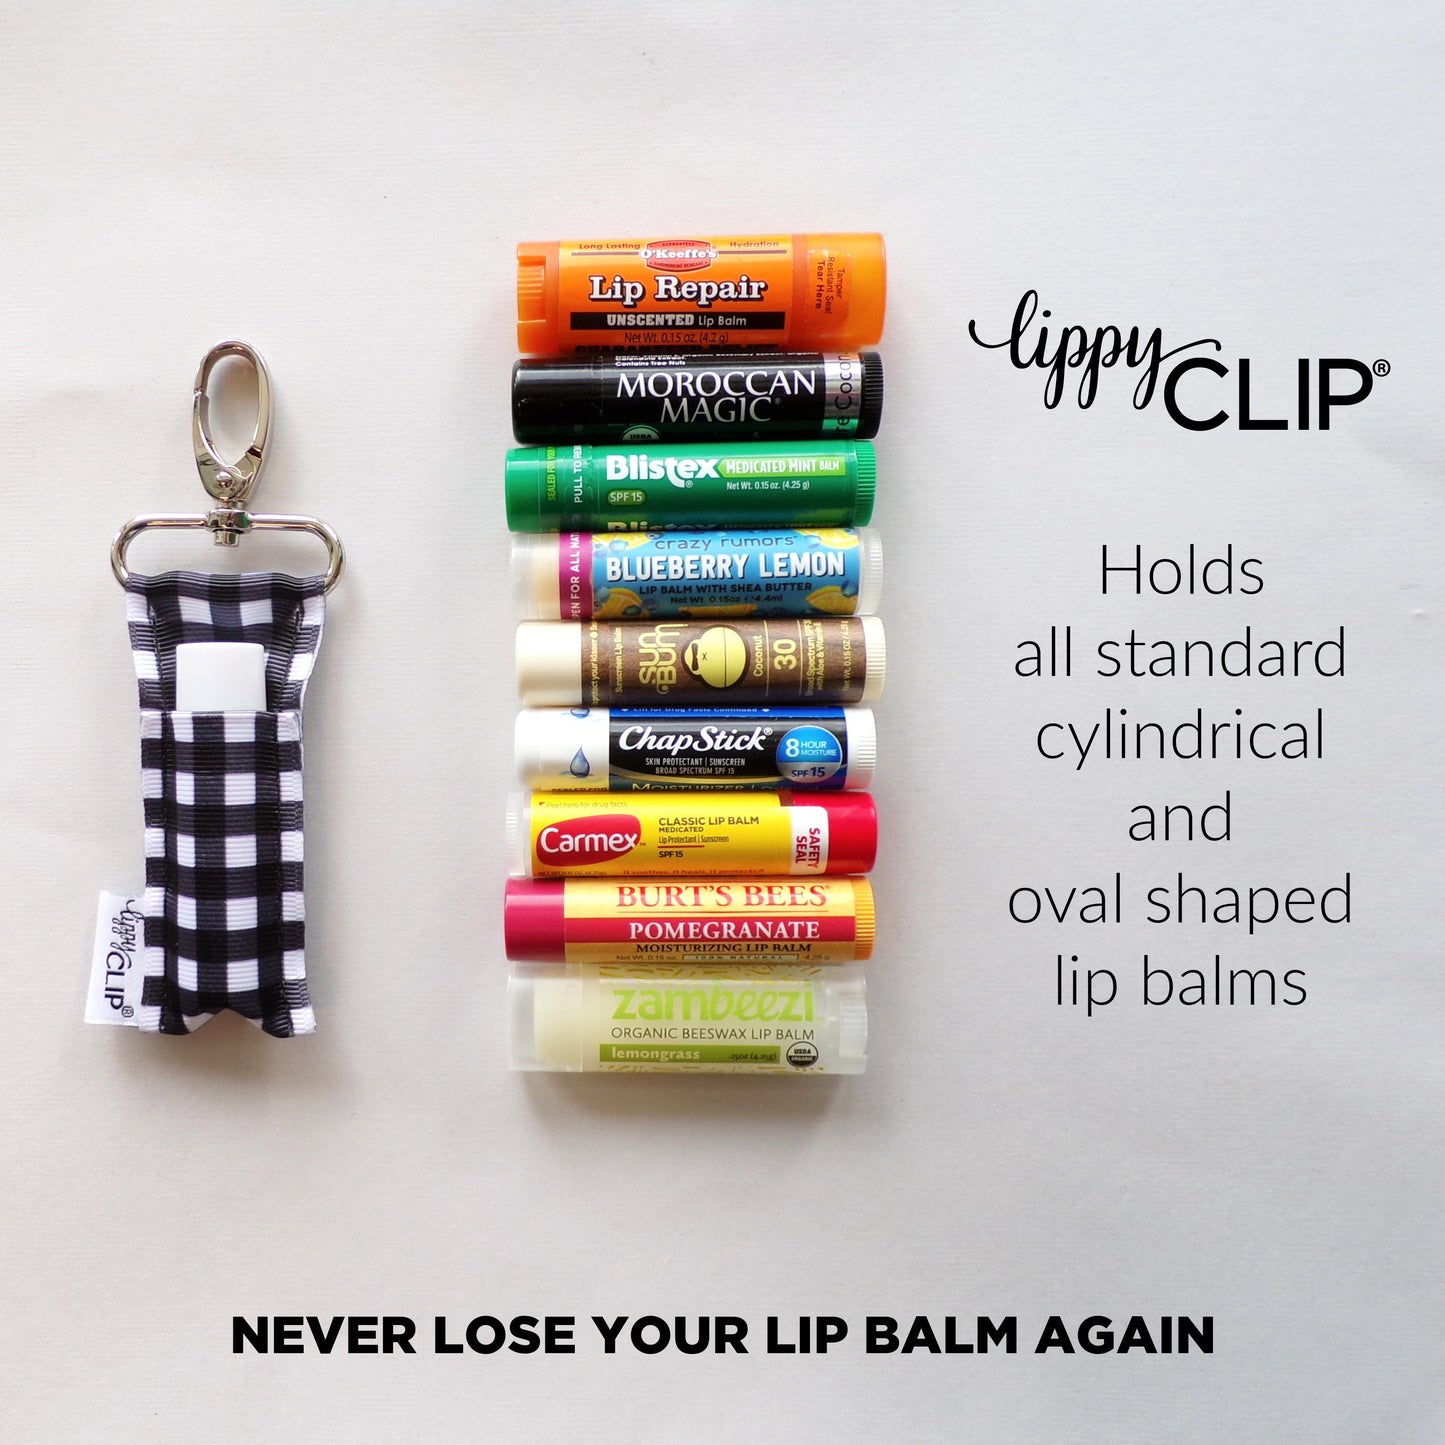 Ice Cream Cone LippyClip® Lip Balm Holder